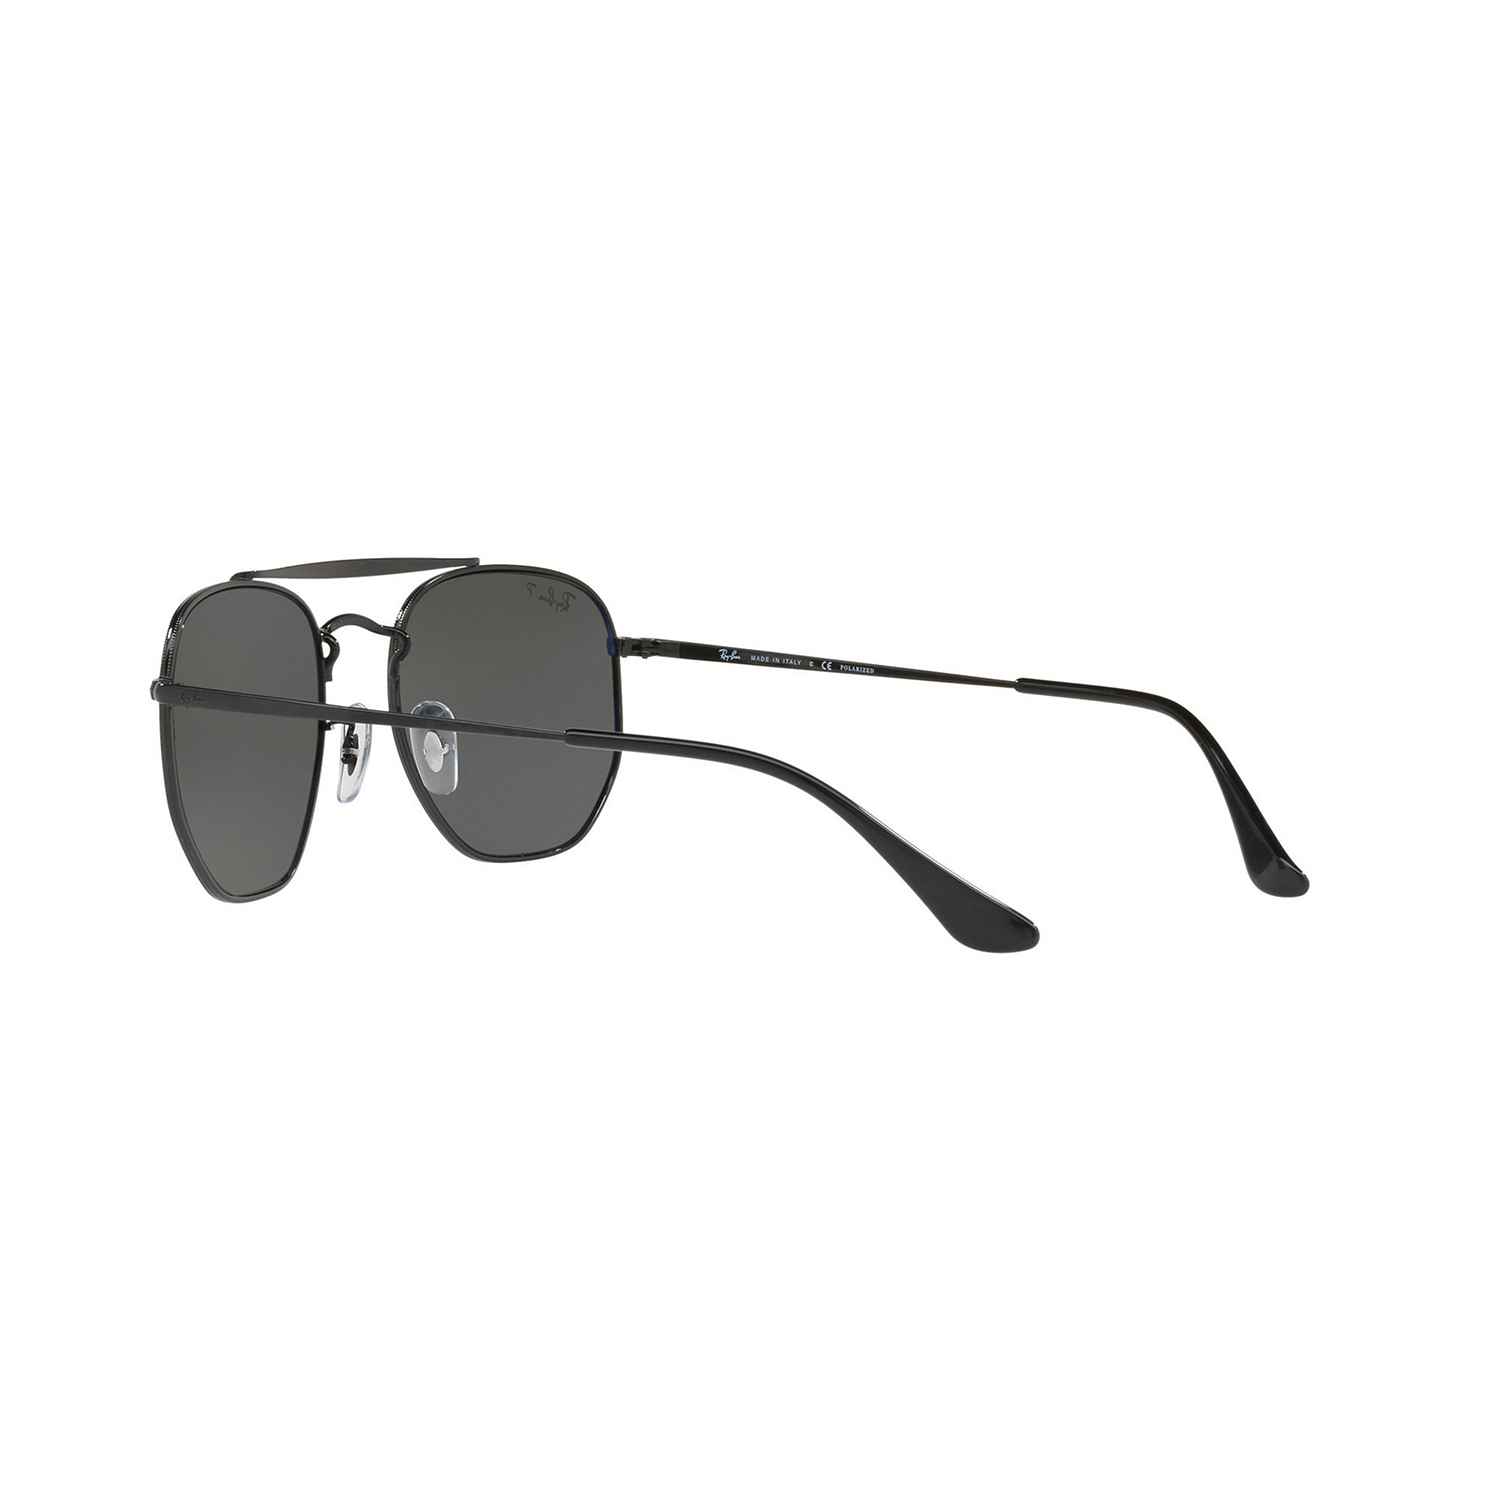 Polarised Square Sunglasses Black